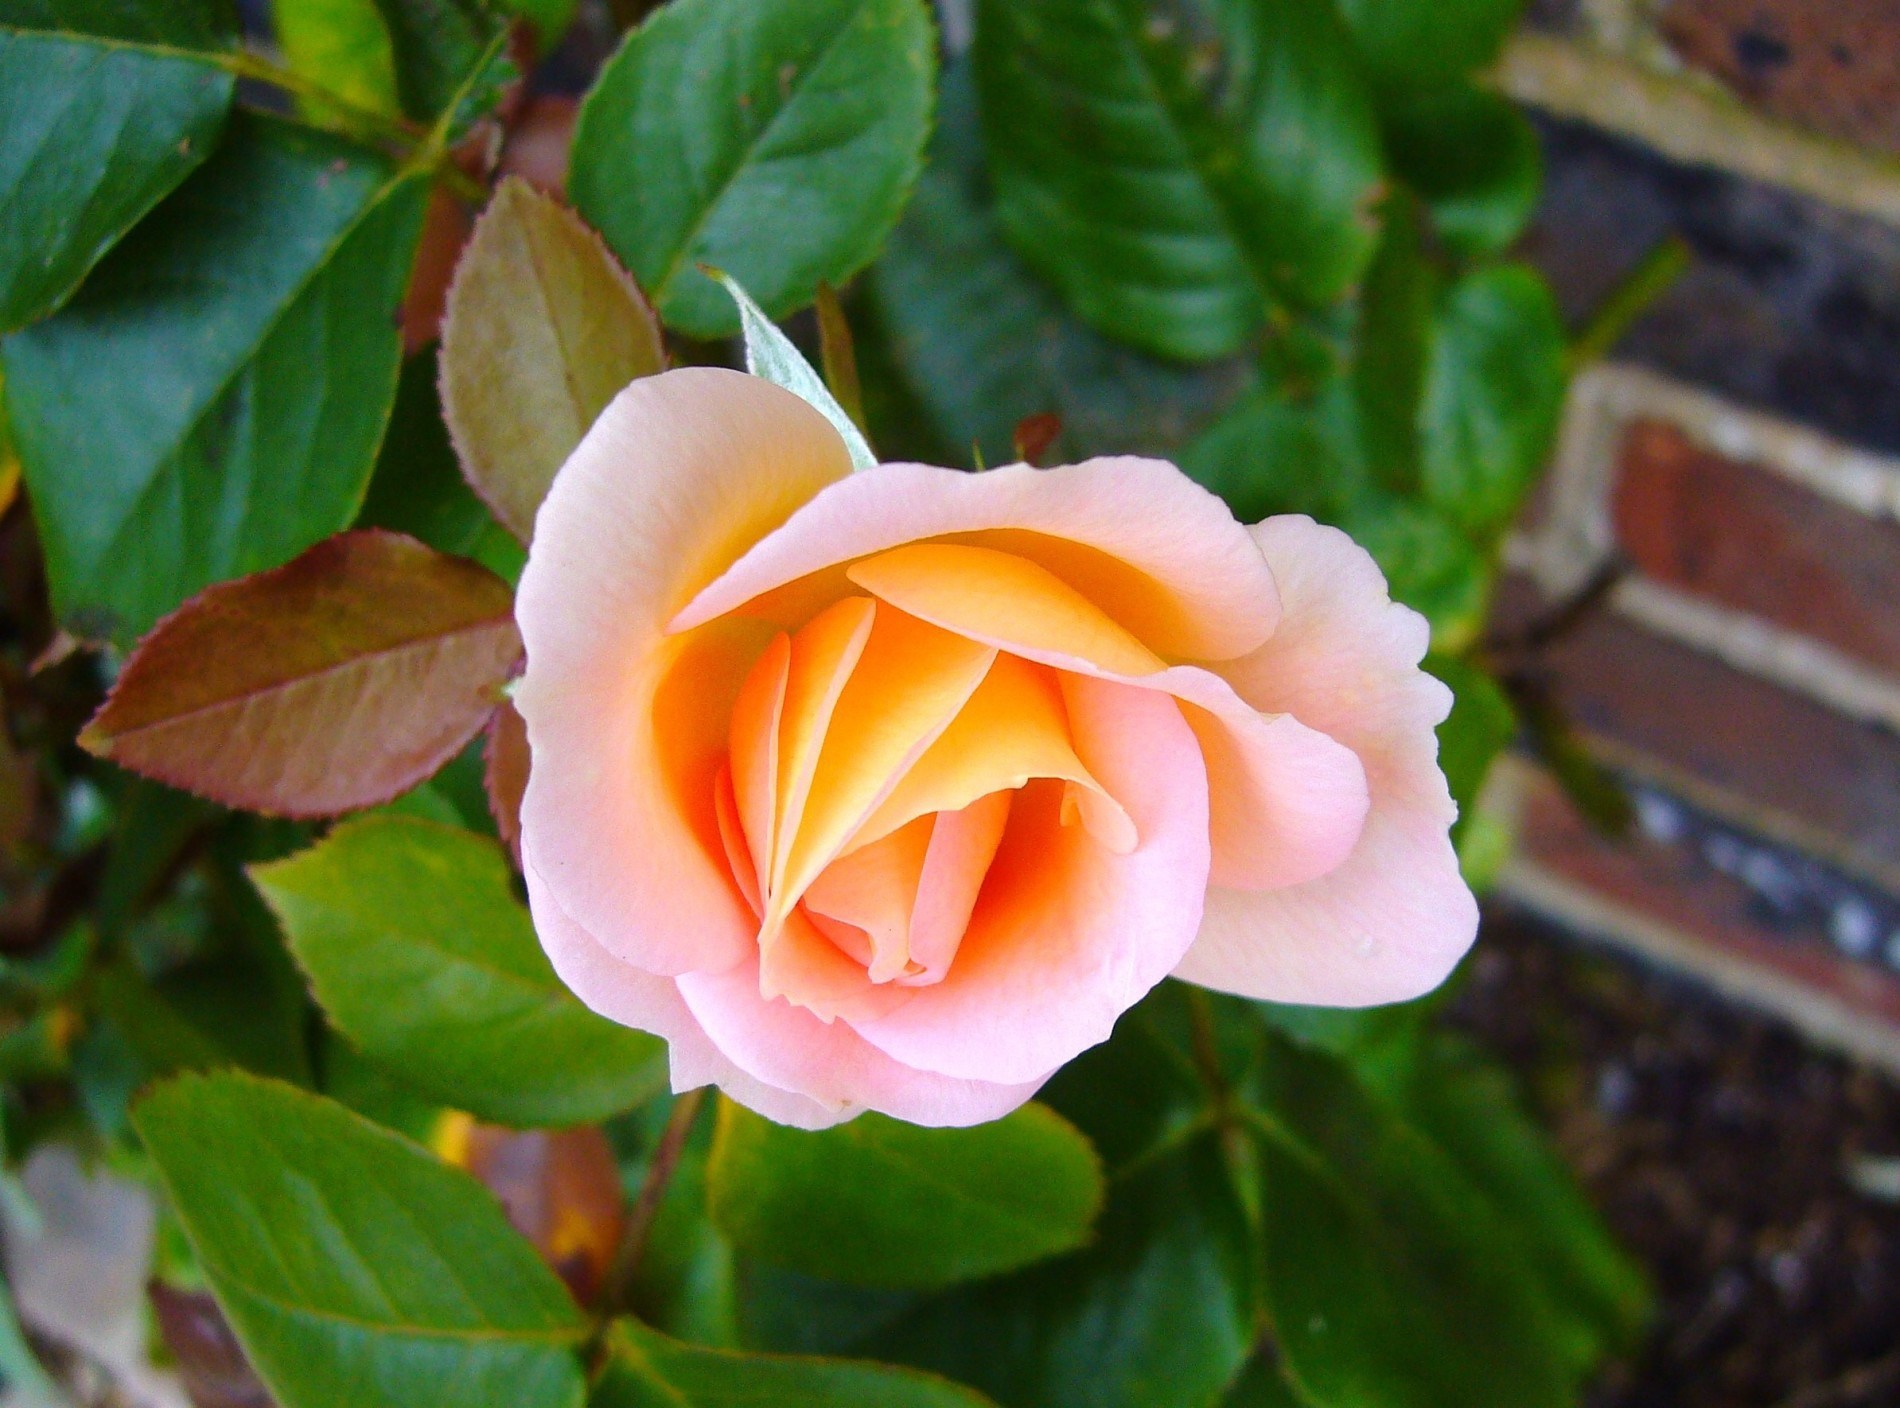 rosebud tapete,blume,blühende pflanze,julia kind stand auf,blütenblatt,gartenrosen